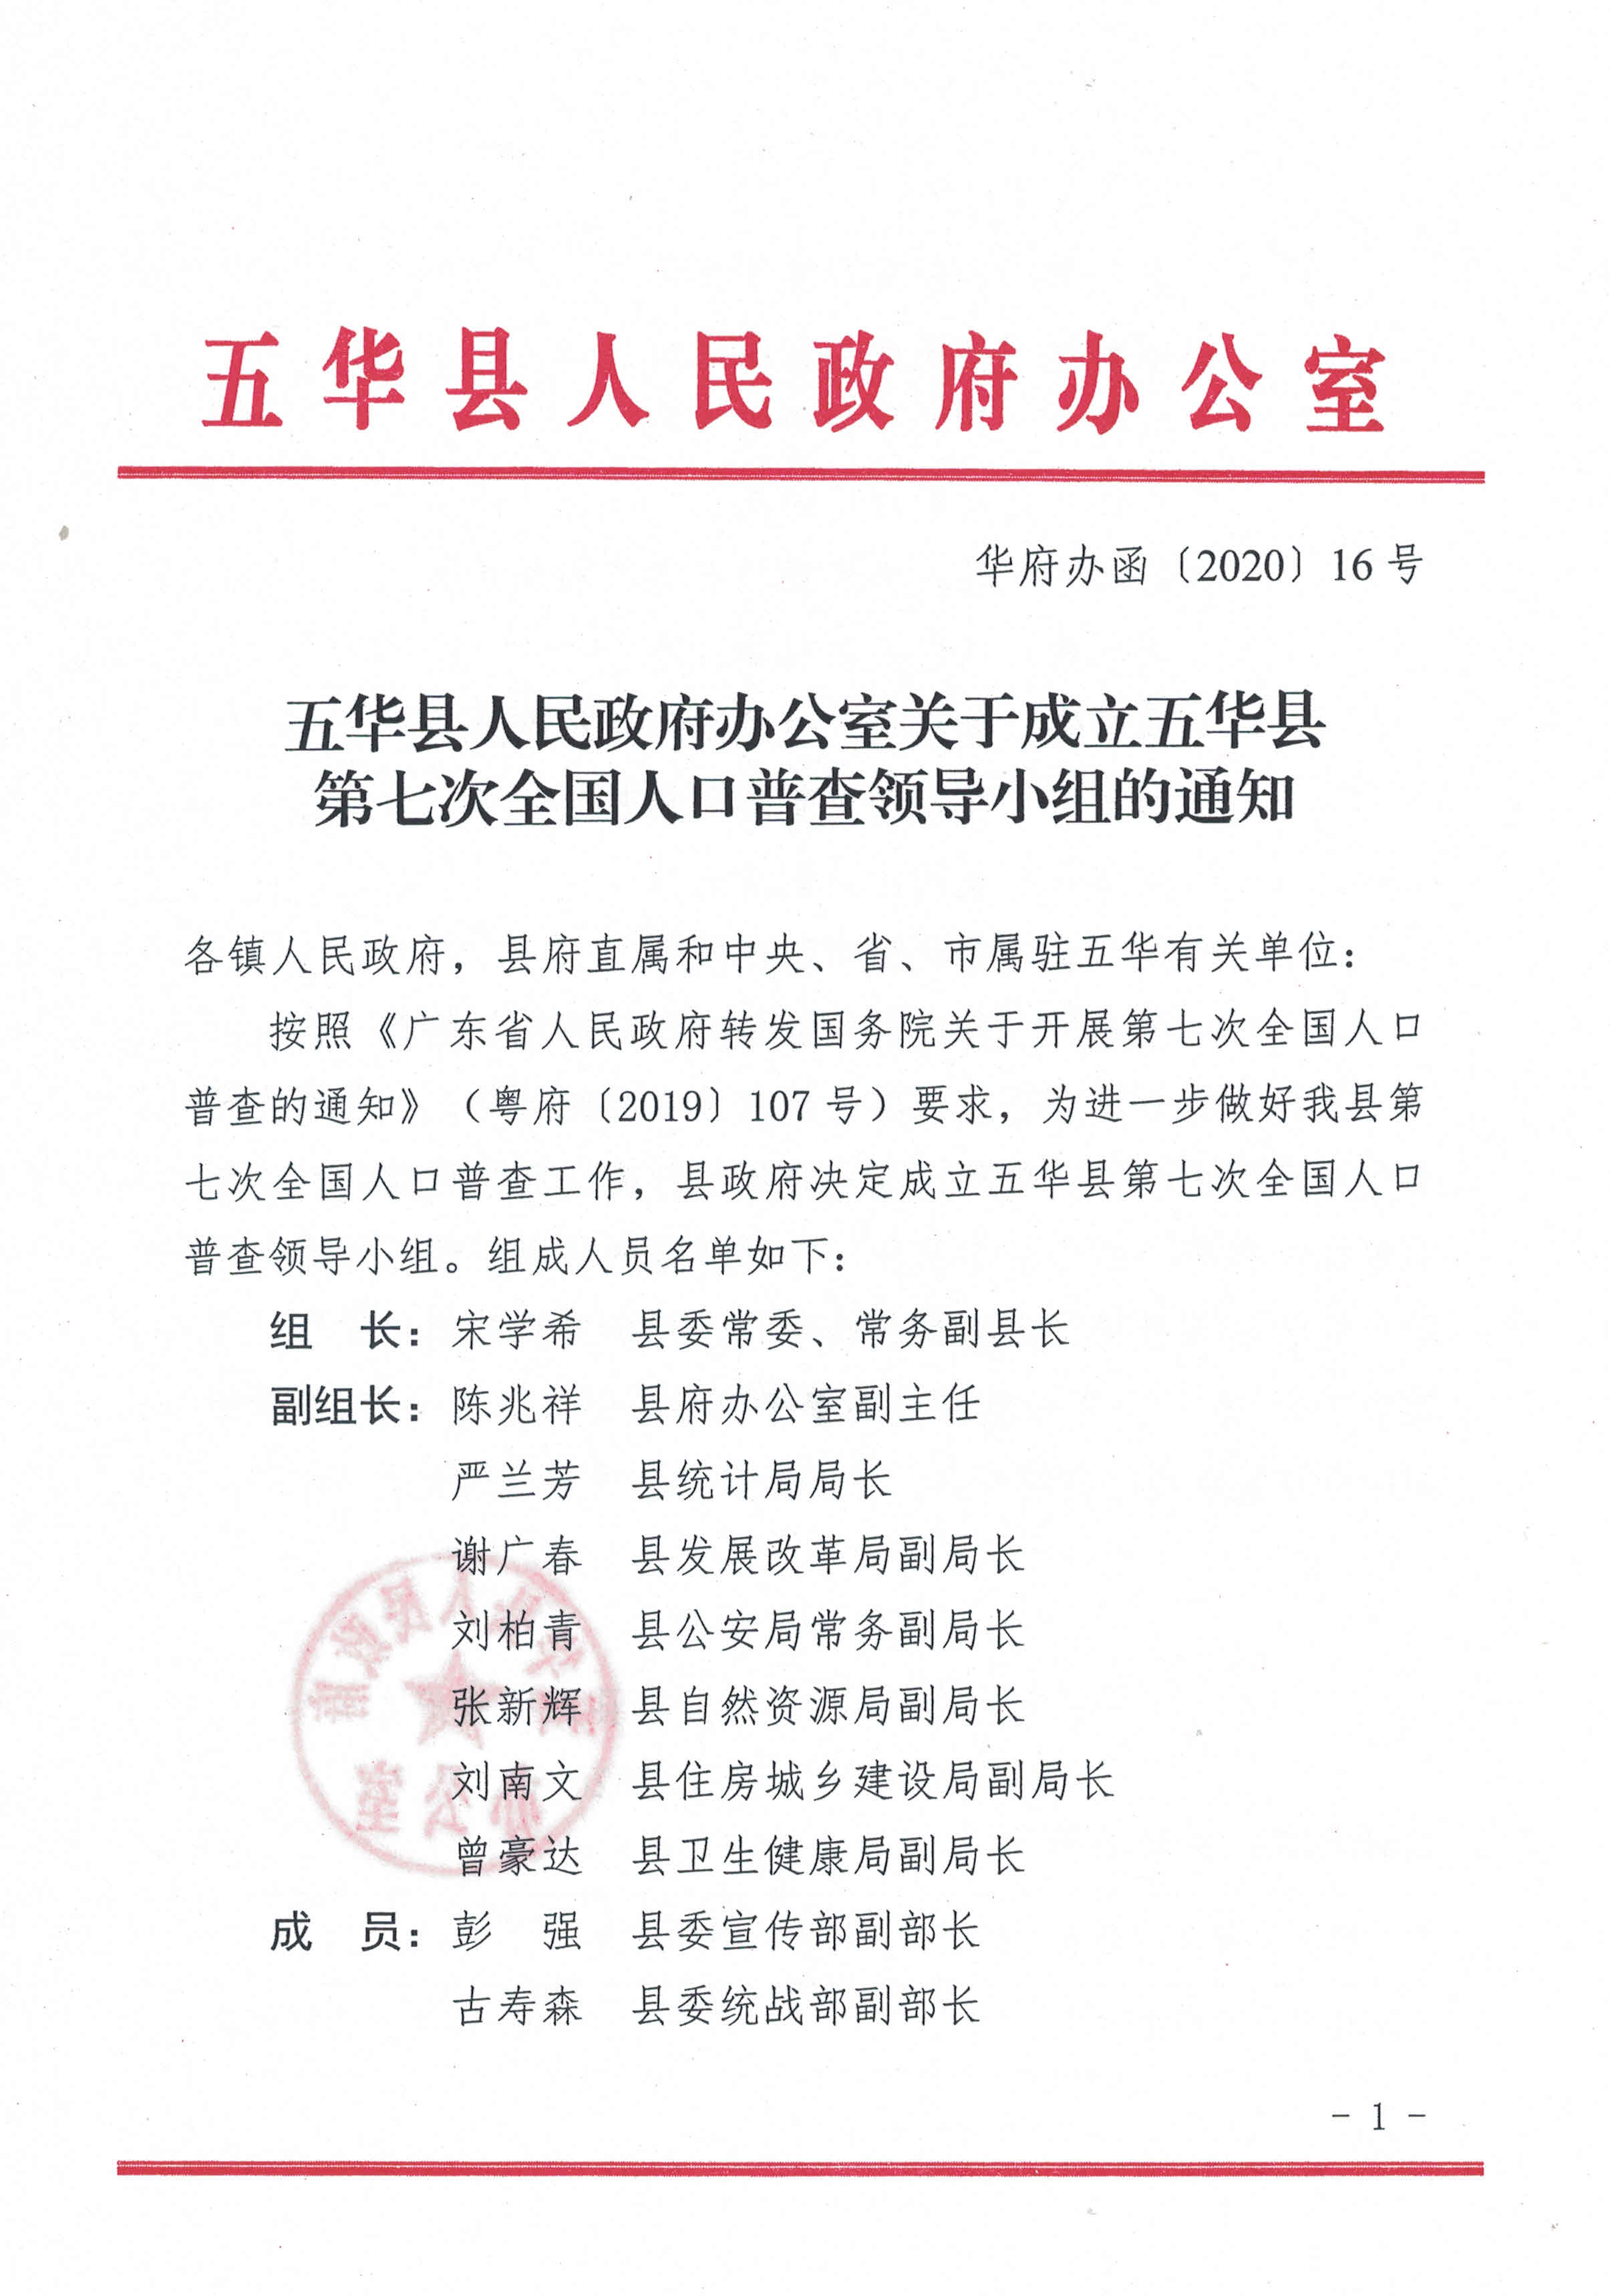 五华县人民政府办公室关于成立五华县第七次全国人口普查领导小组的通知.jpg